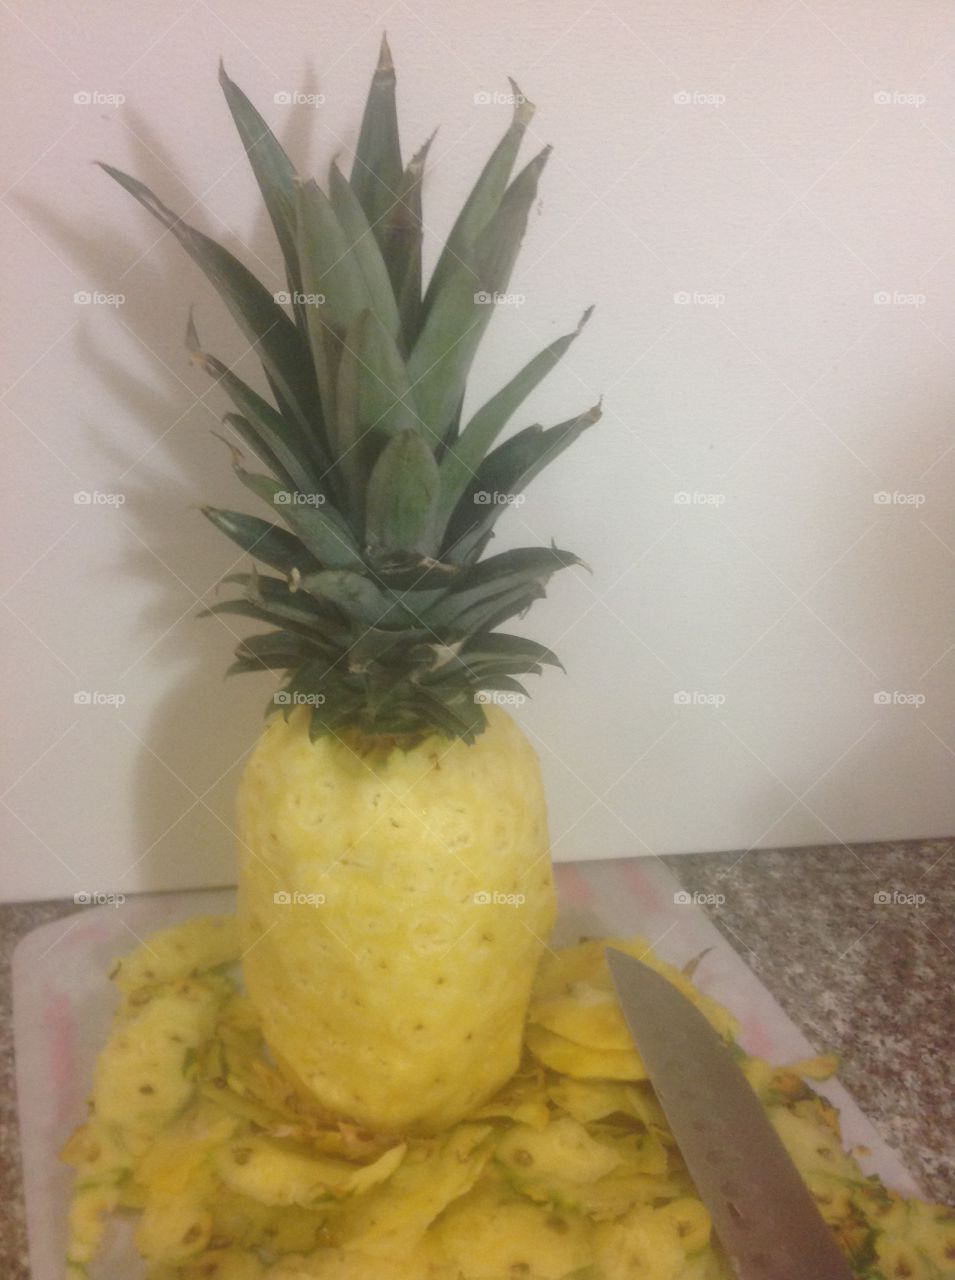 Peeled juicy pineapple.